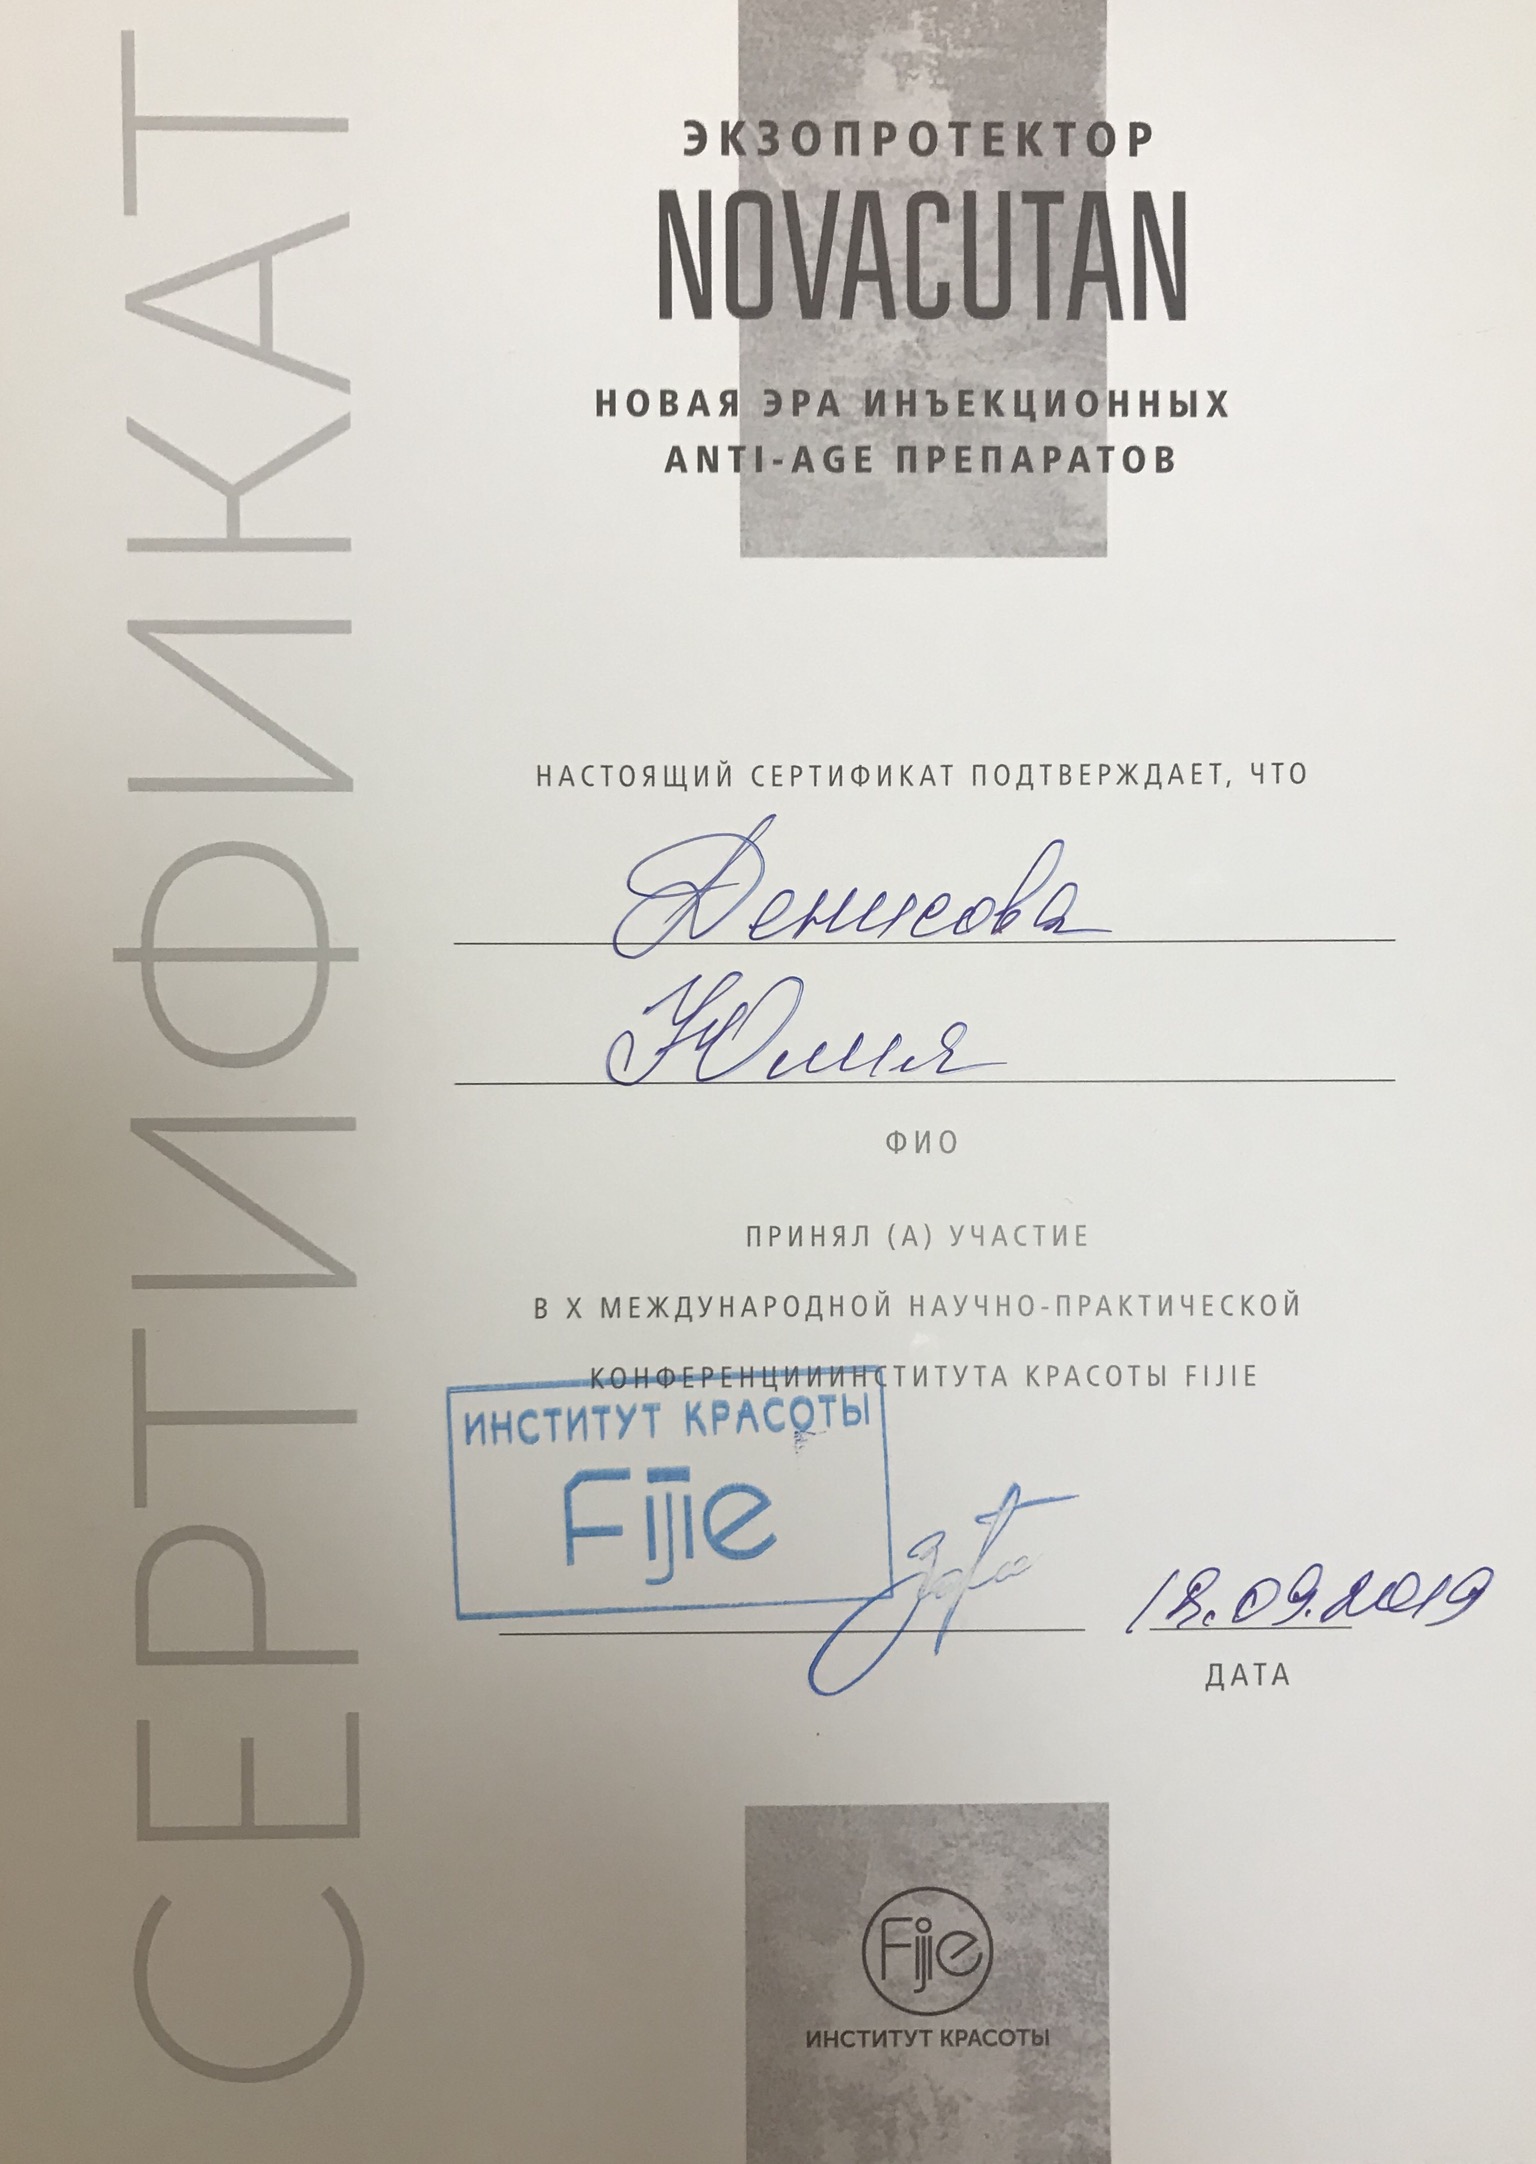 Сертификат Денисовой Юлии